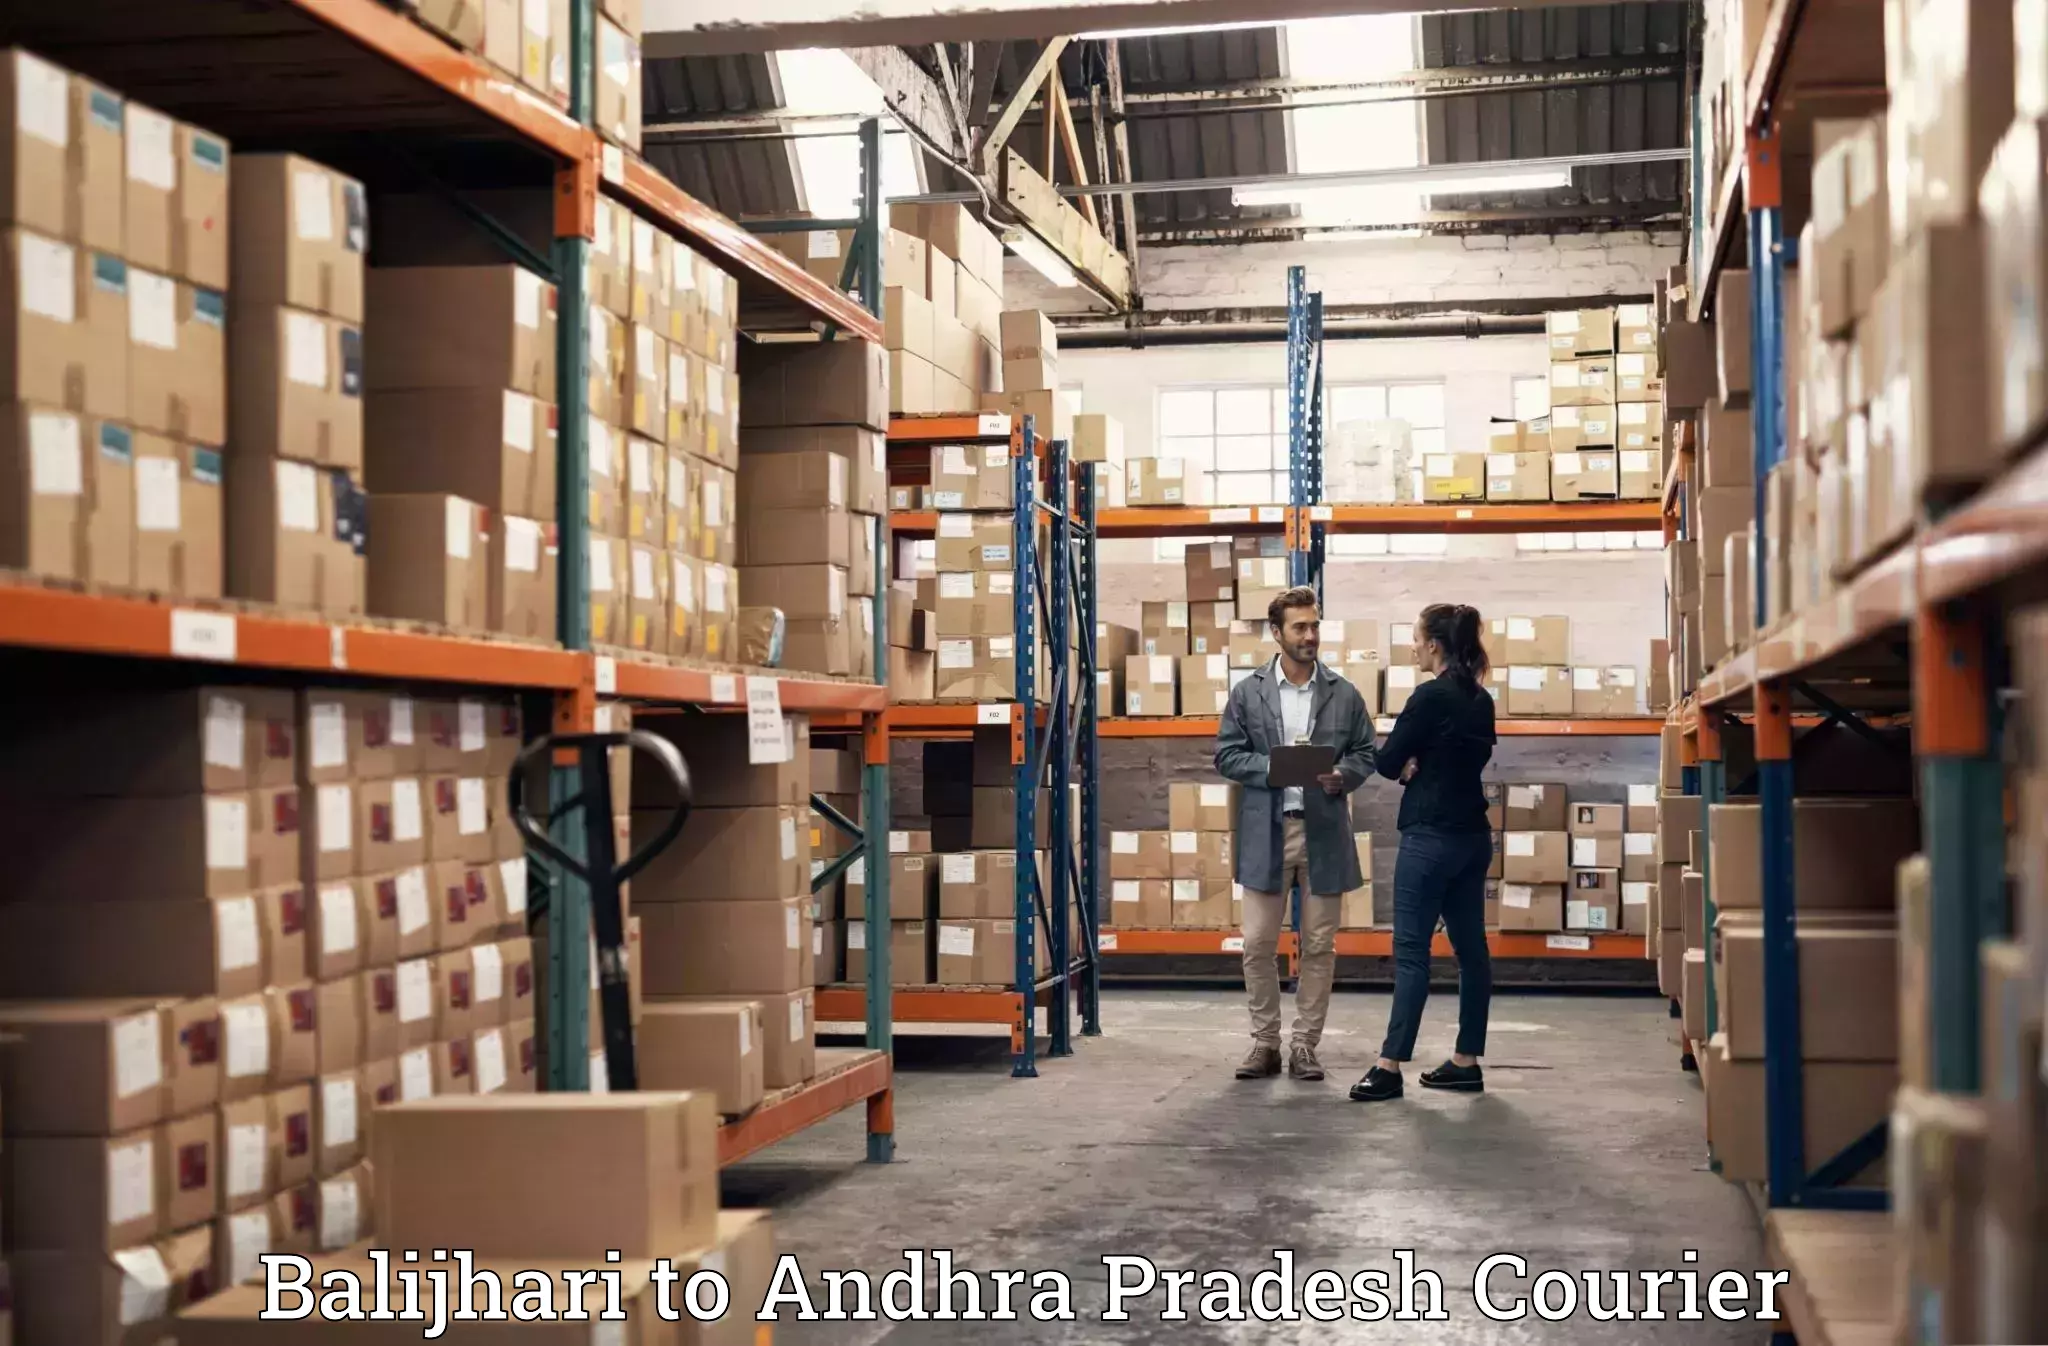 Personalized moving and storage in Balijhari to Bhimavaram